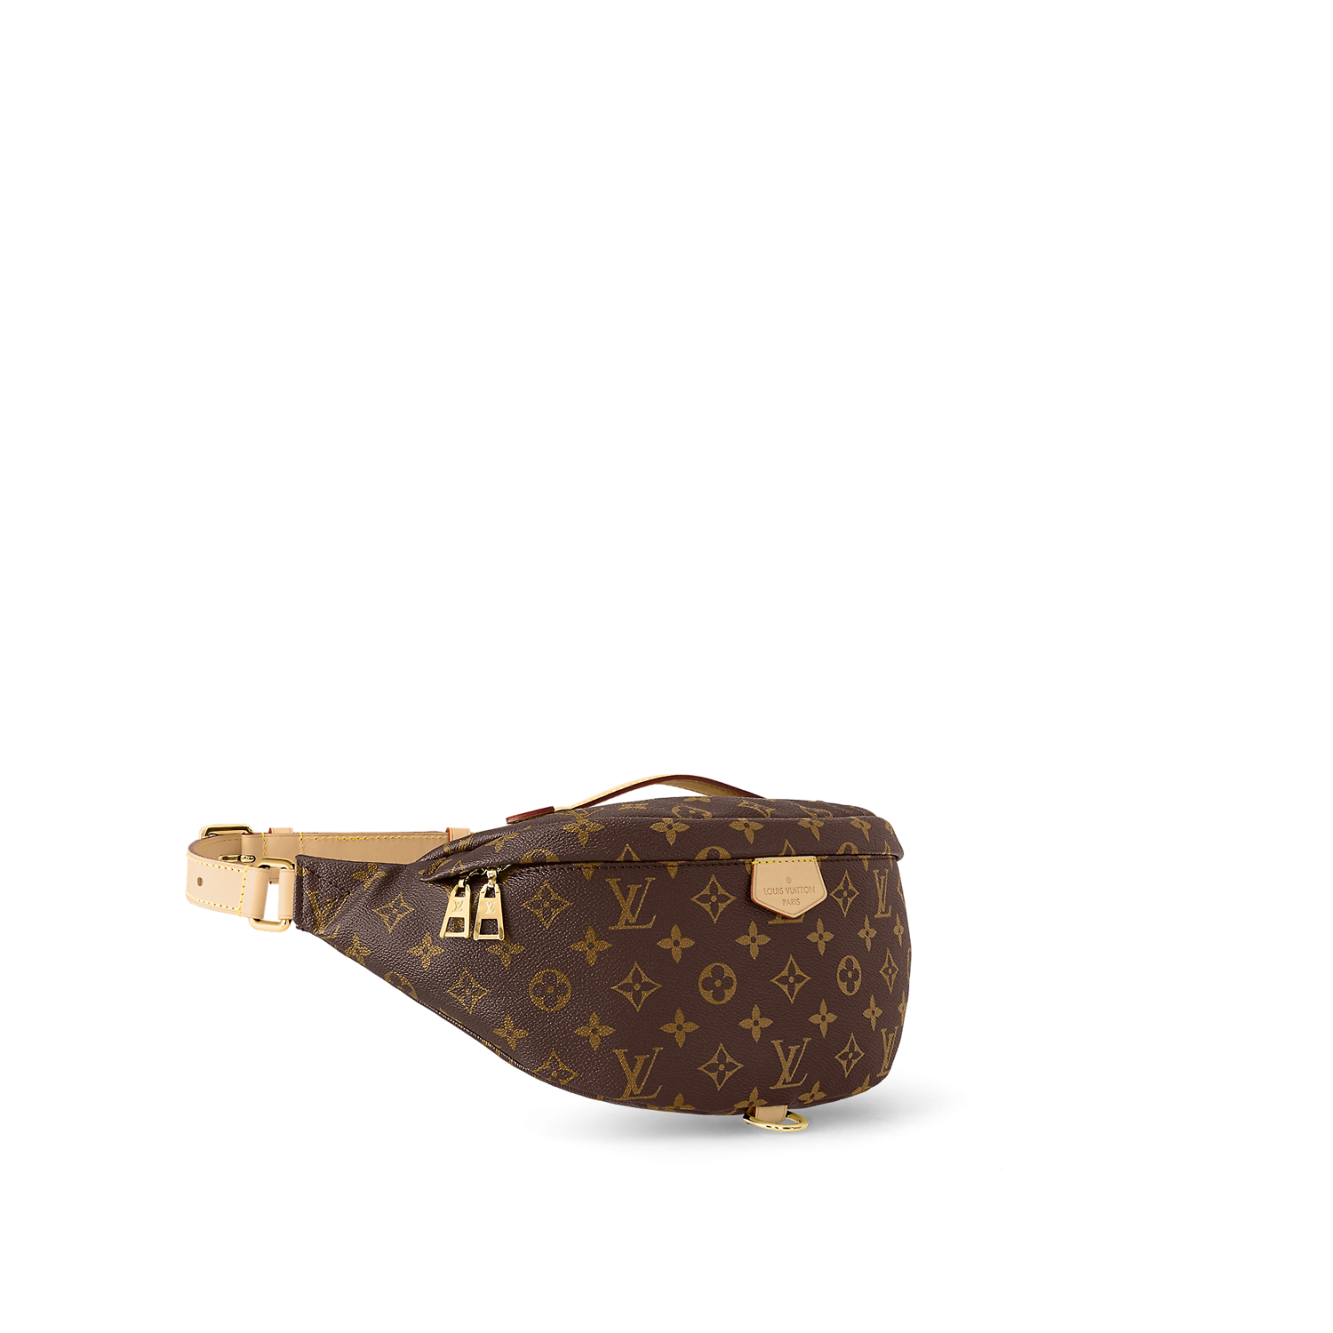 Louis Vuitton fanny pack /waist bag / bodybag lv